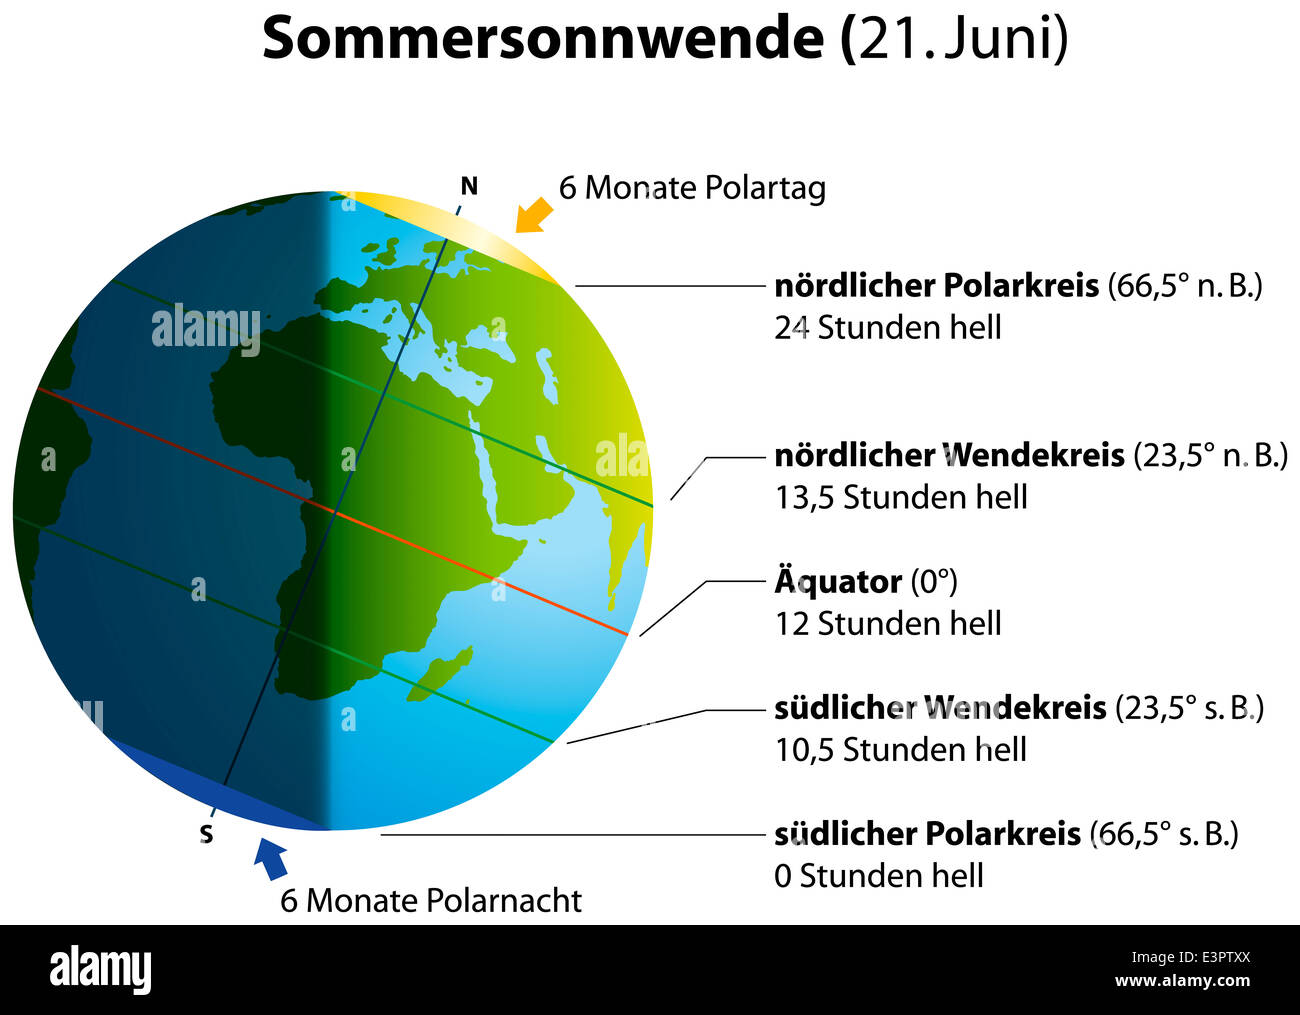 Abbildung der Sommersonnenwende am 21. Juni. Globus mit Kontinenten,  Sonnenlicht und Schatten. Deutsche Beschriftung! Stockfotografie - Alamy